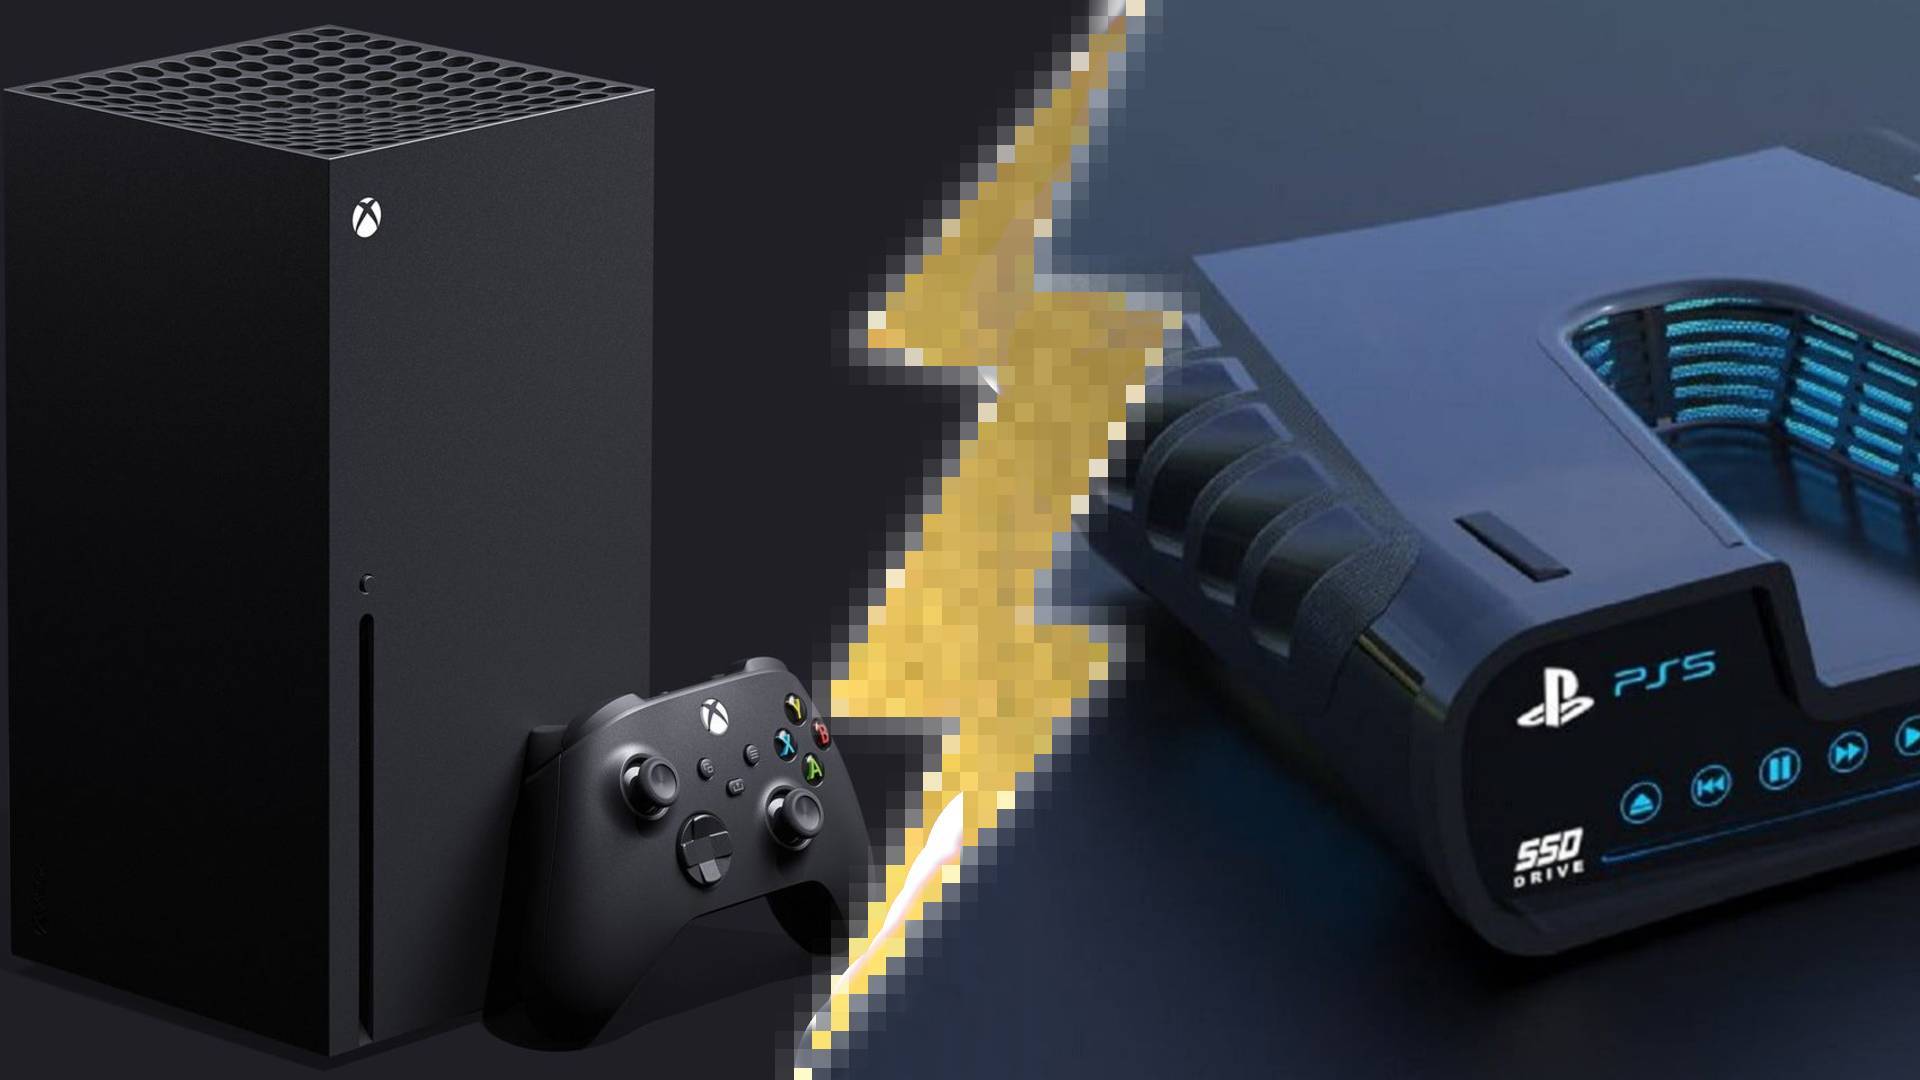 PS5 vs Xbox Series X - We compare